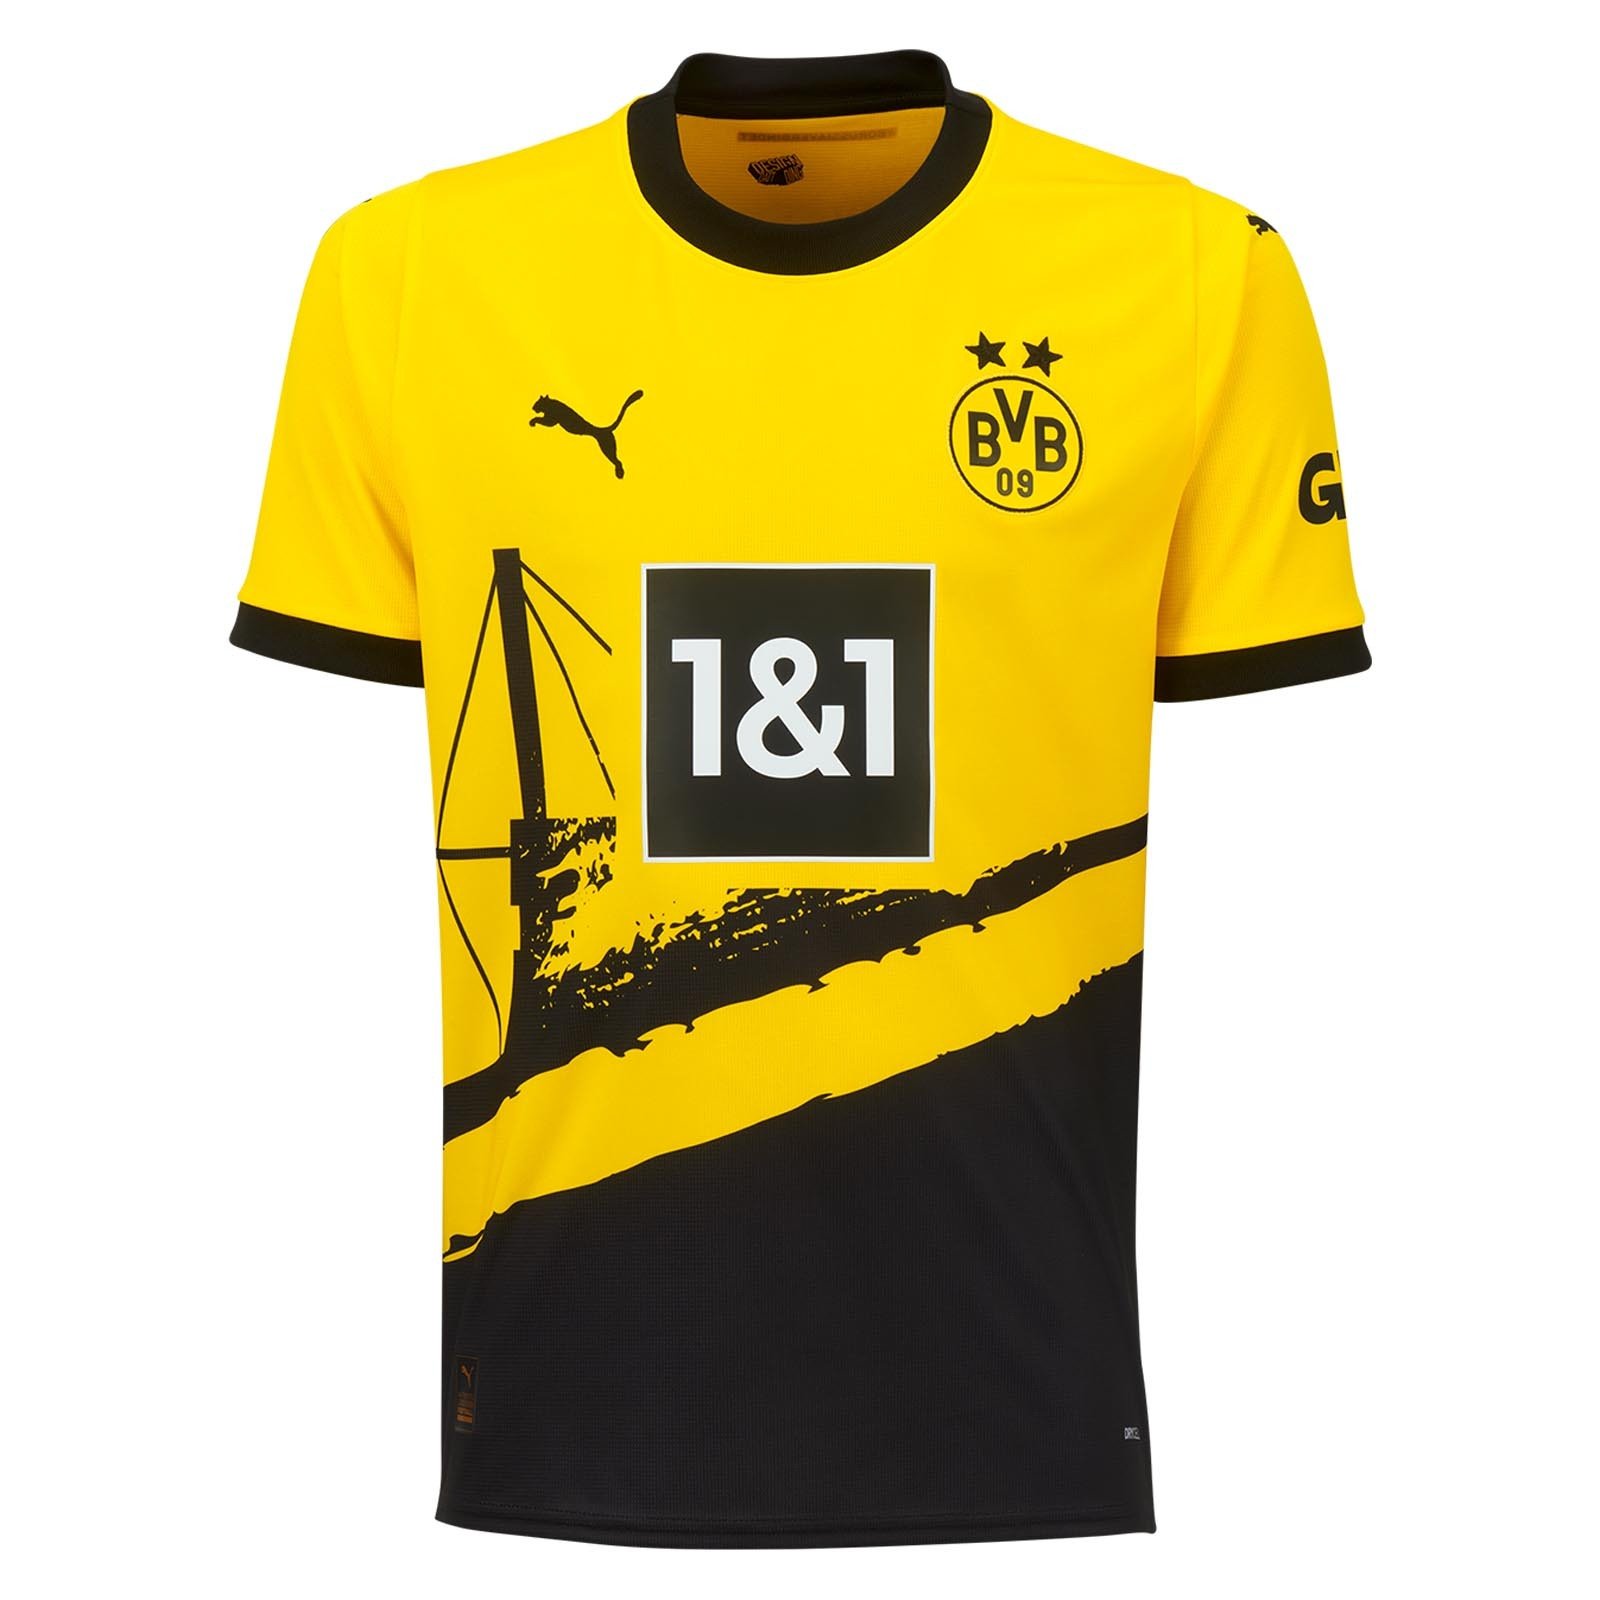 BVB Dortmund 2024 nouveau maillot de foot domicile officiel